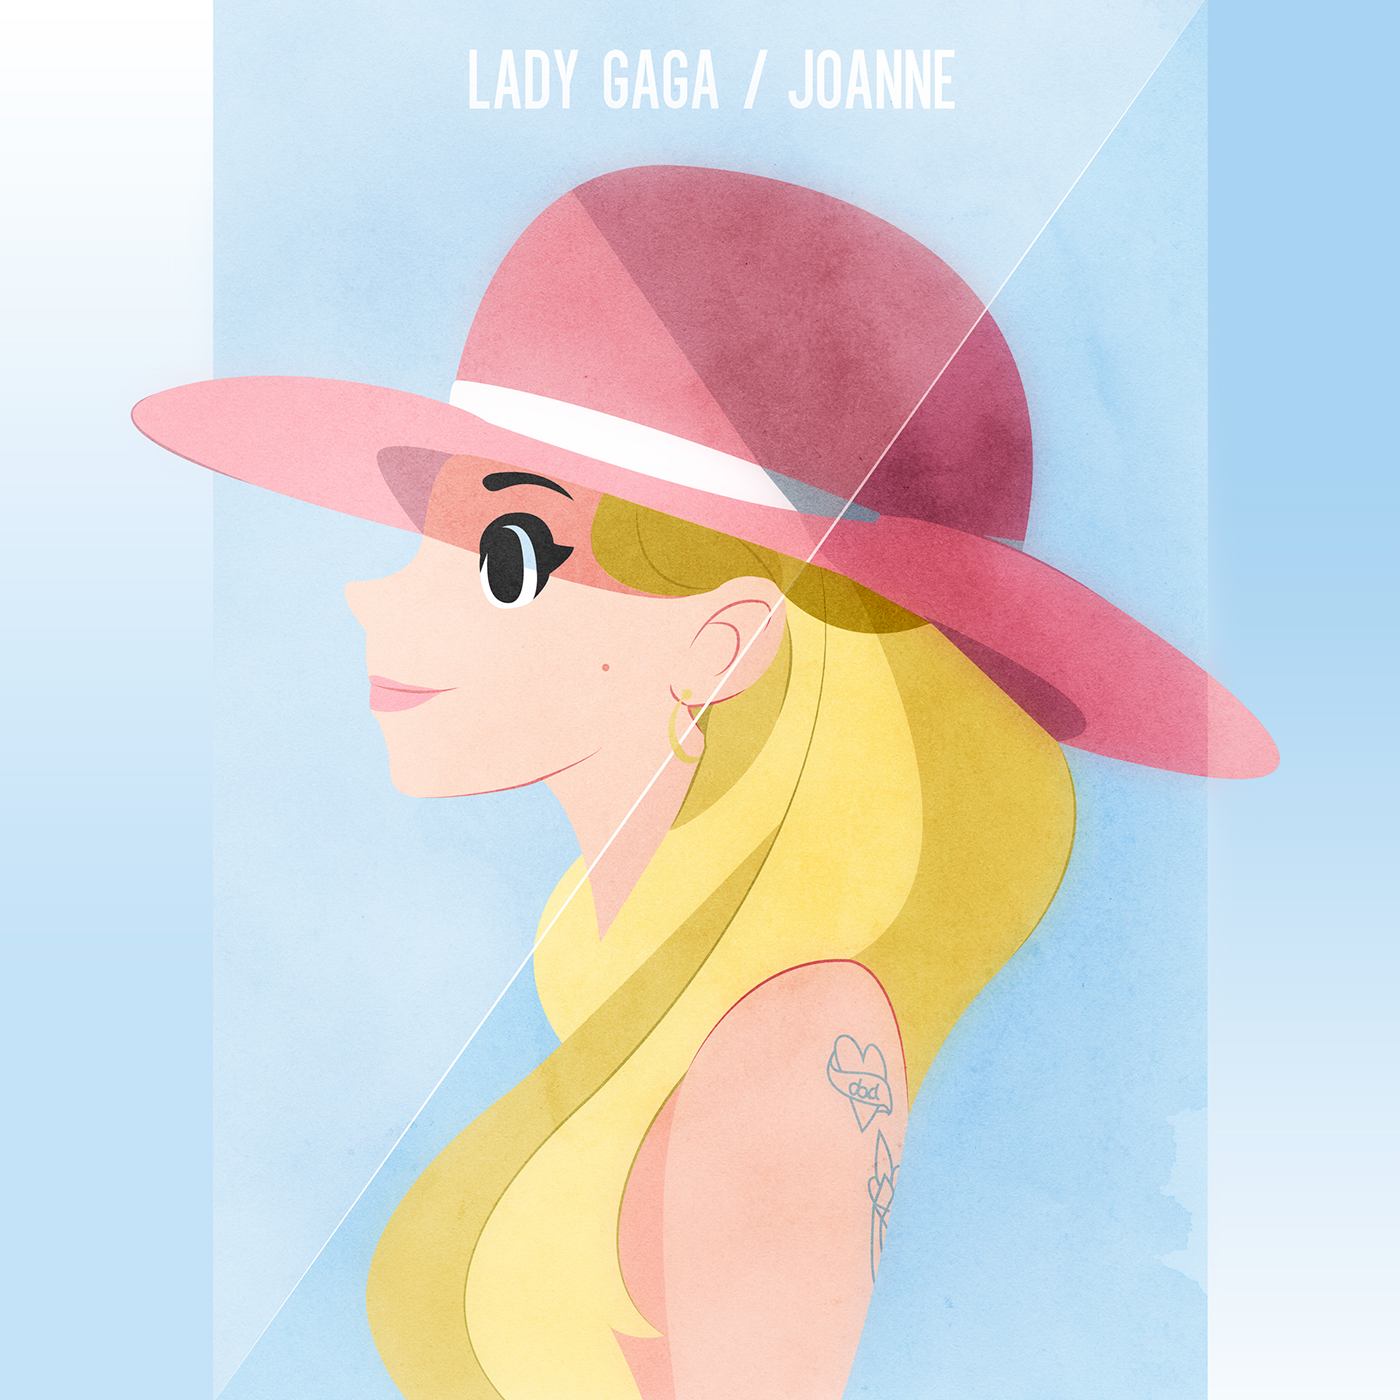 Lady Gaga lady gaga joanne lady gaga fanart Album Cover Illustration illustration lady gaga art lady gaga music cover illustrated t-shirt lady gaga drawings